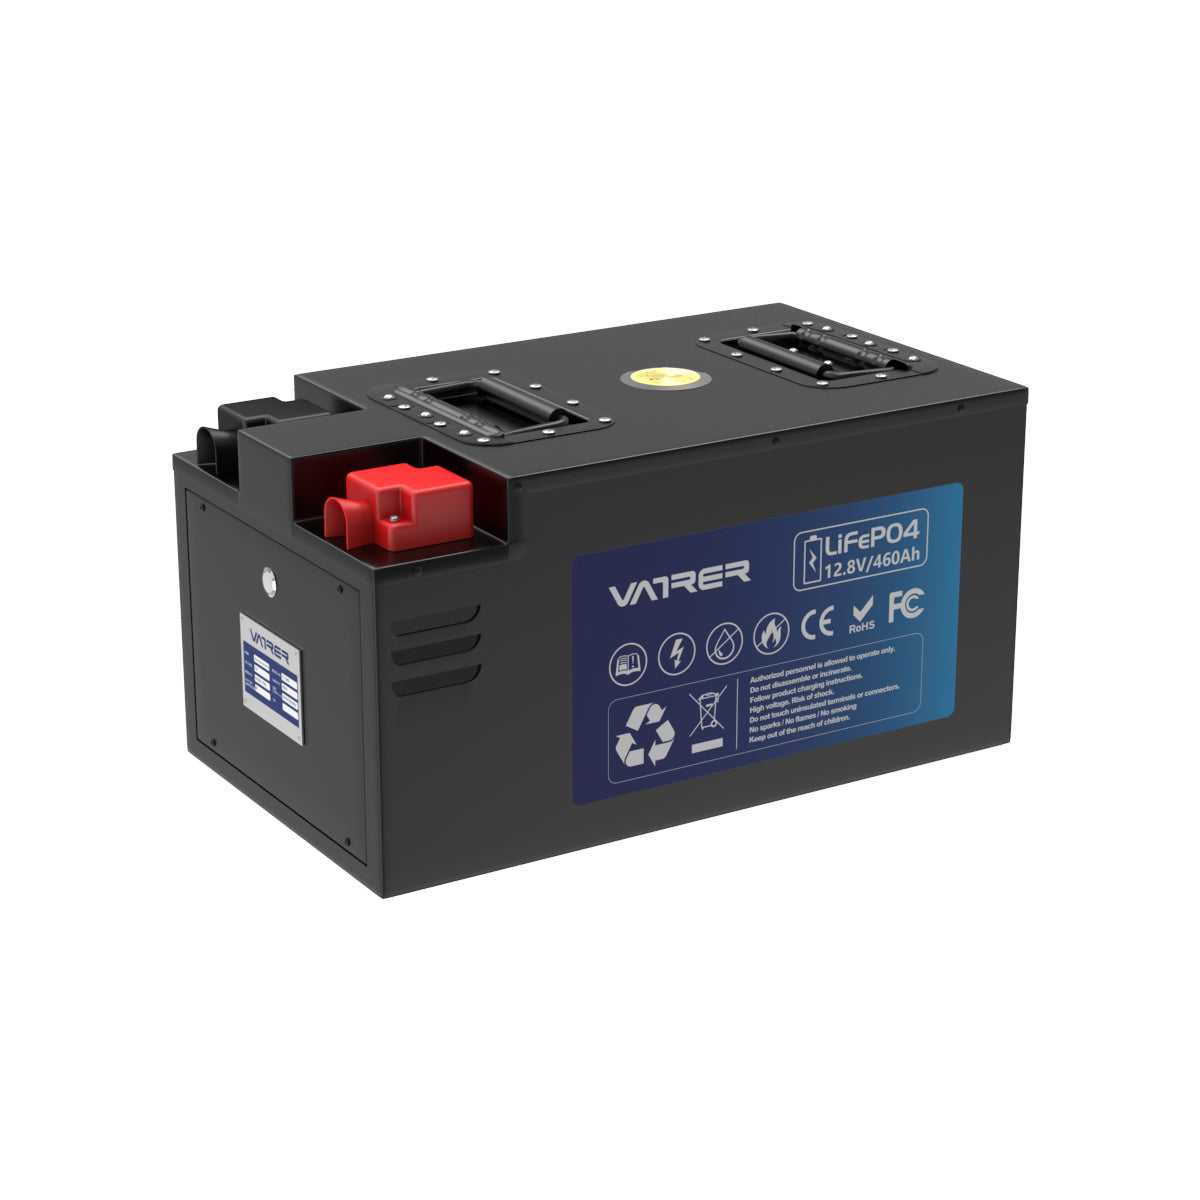 Vatrer 12V 460AH LiFePO4-RV-Batterie mit